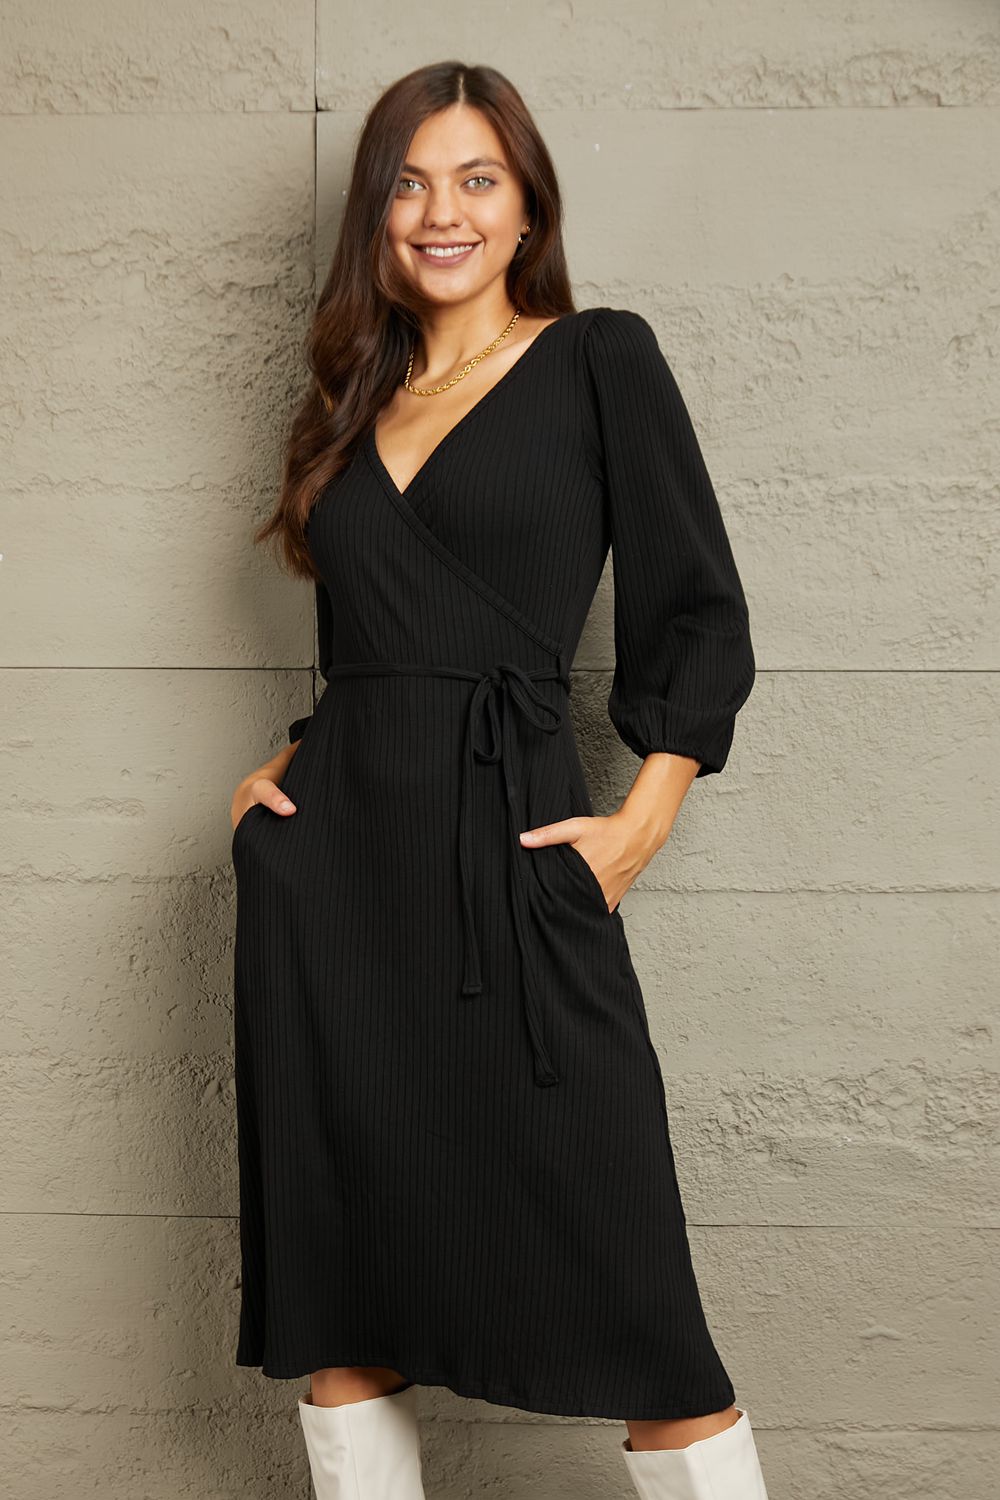 No Way Around It Surplice Flare Ruching Dress-Black Black Wrap Knee Knee Length Dress by Vim&Vigor | Vim&Vigor Boutique